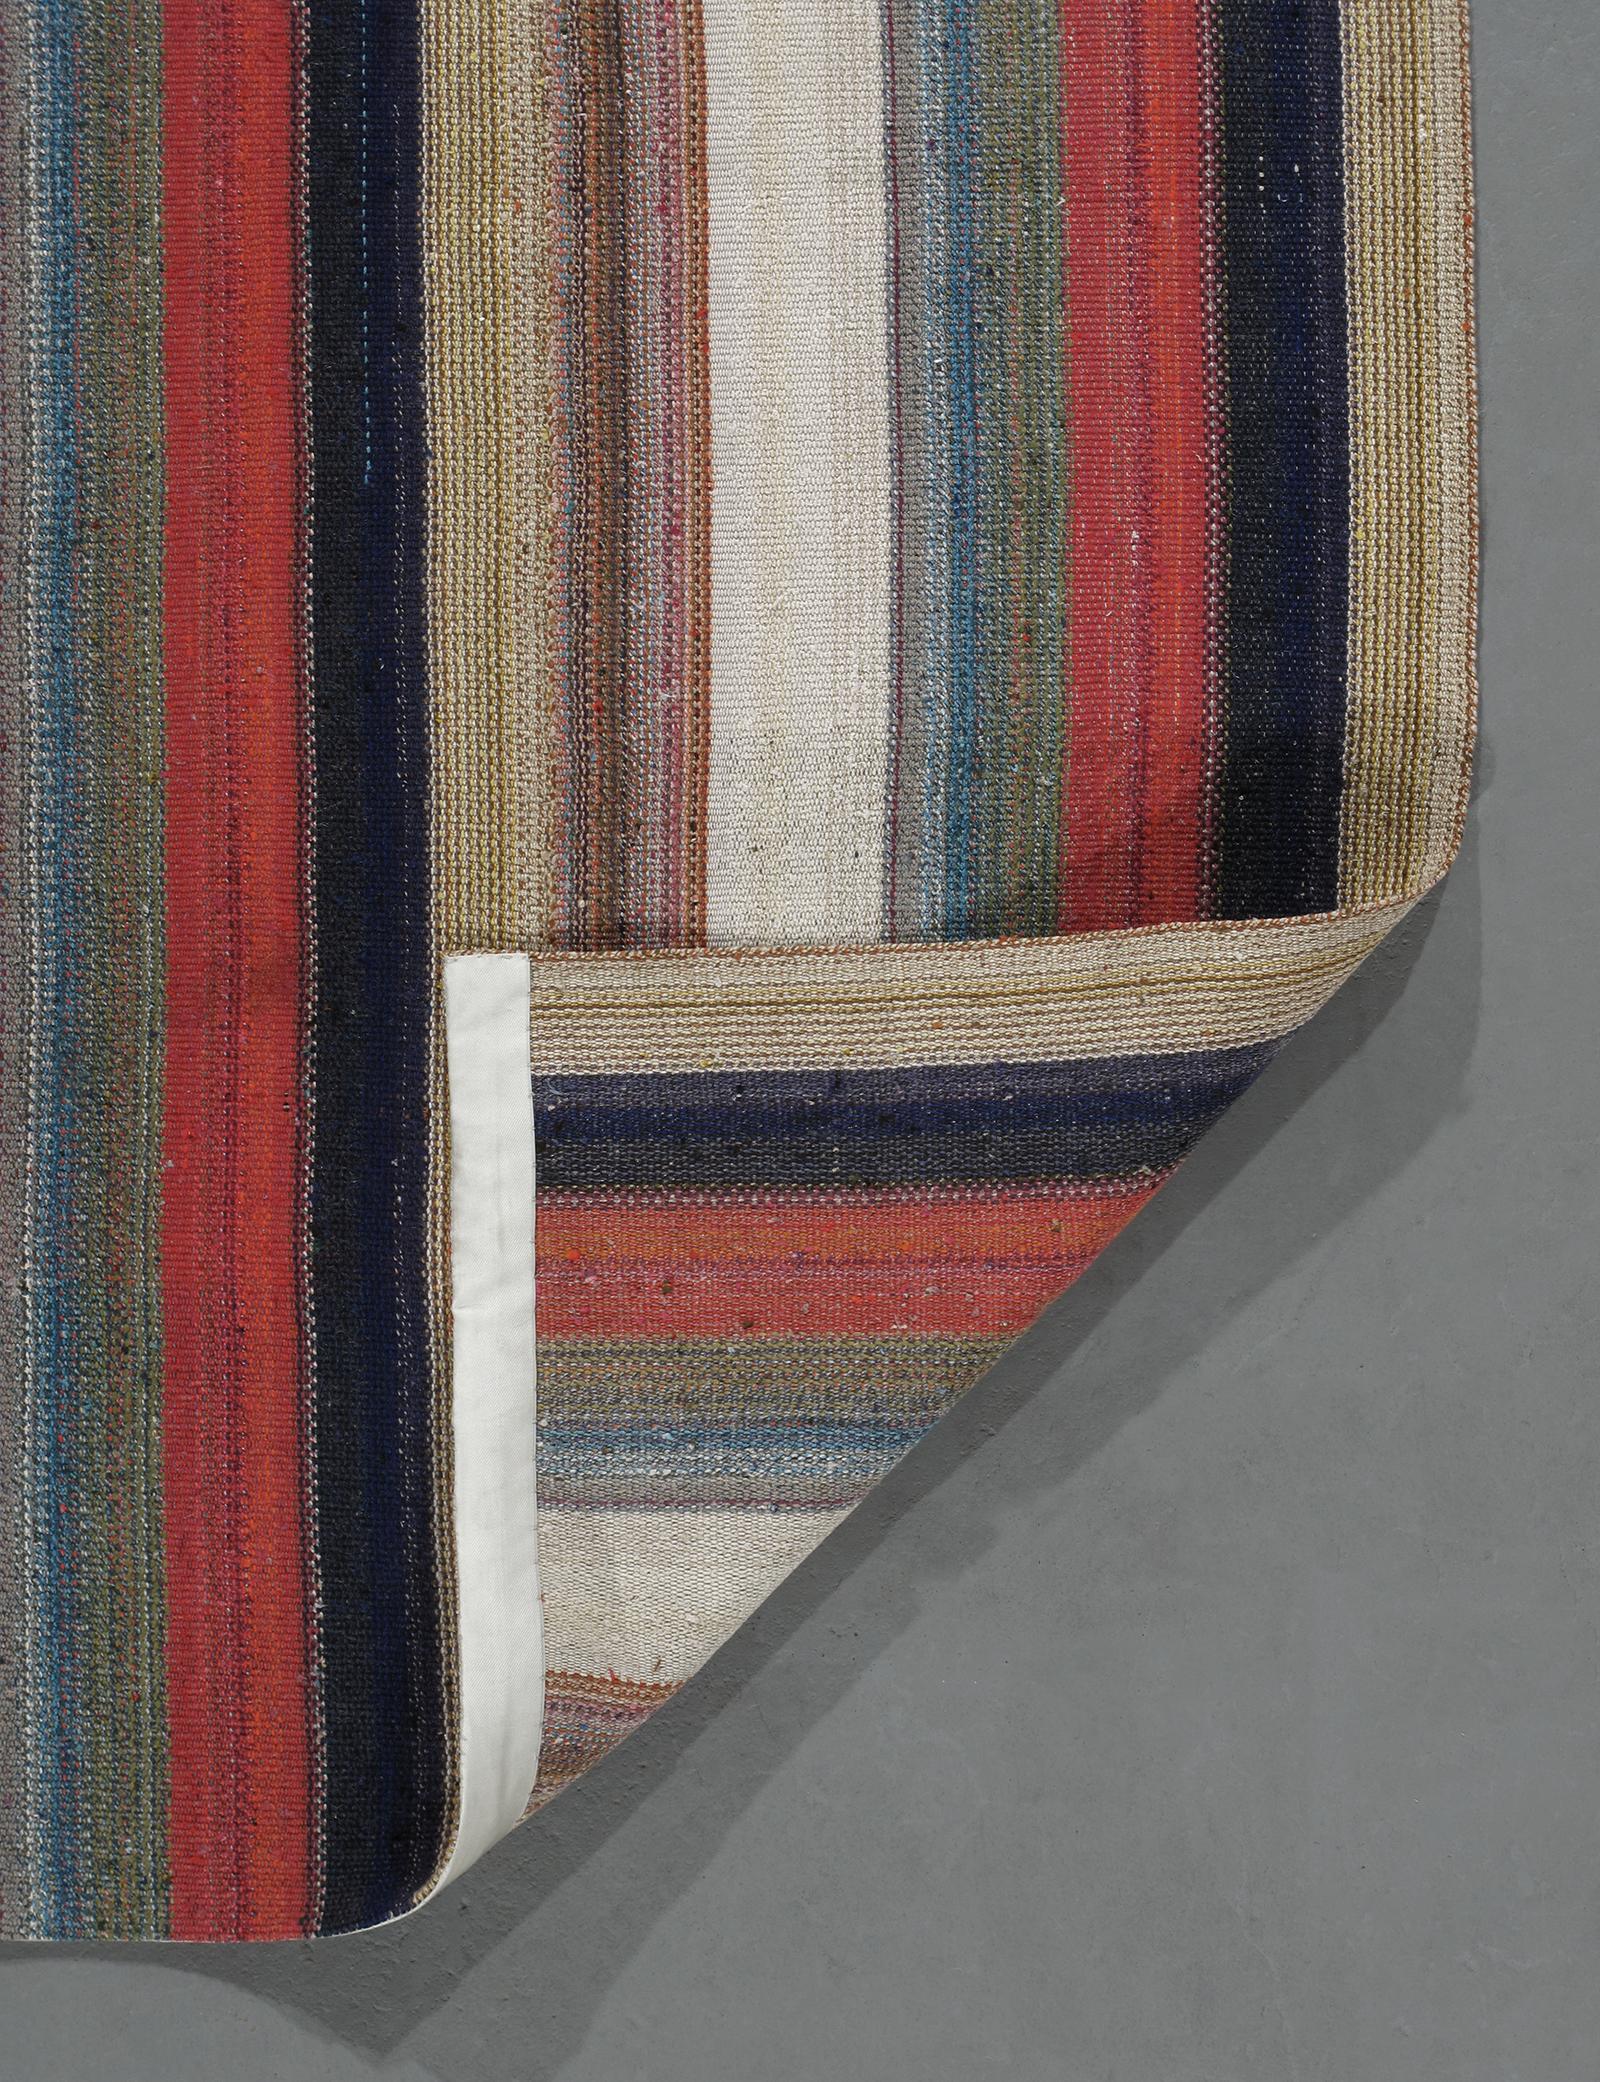 Mid-20th Century Vintage Mid-Century Modern Minimalist Persian Stripe Flat-Weave Rug For Sale